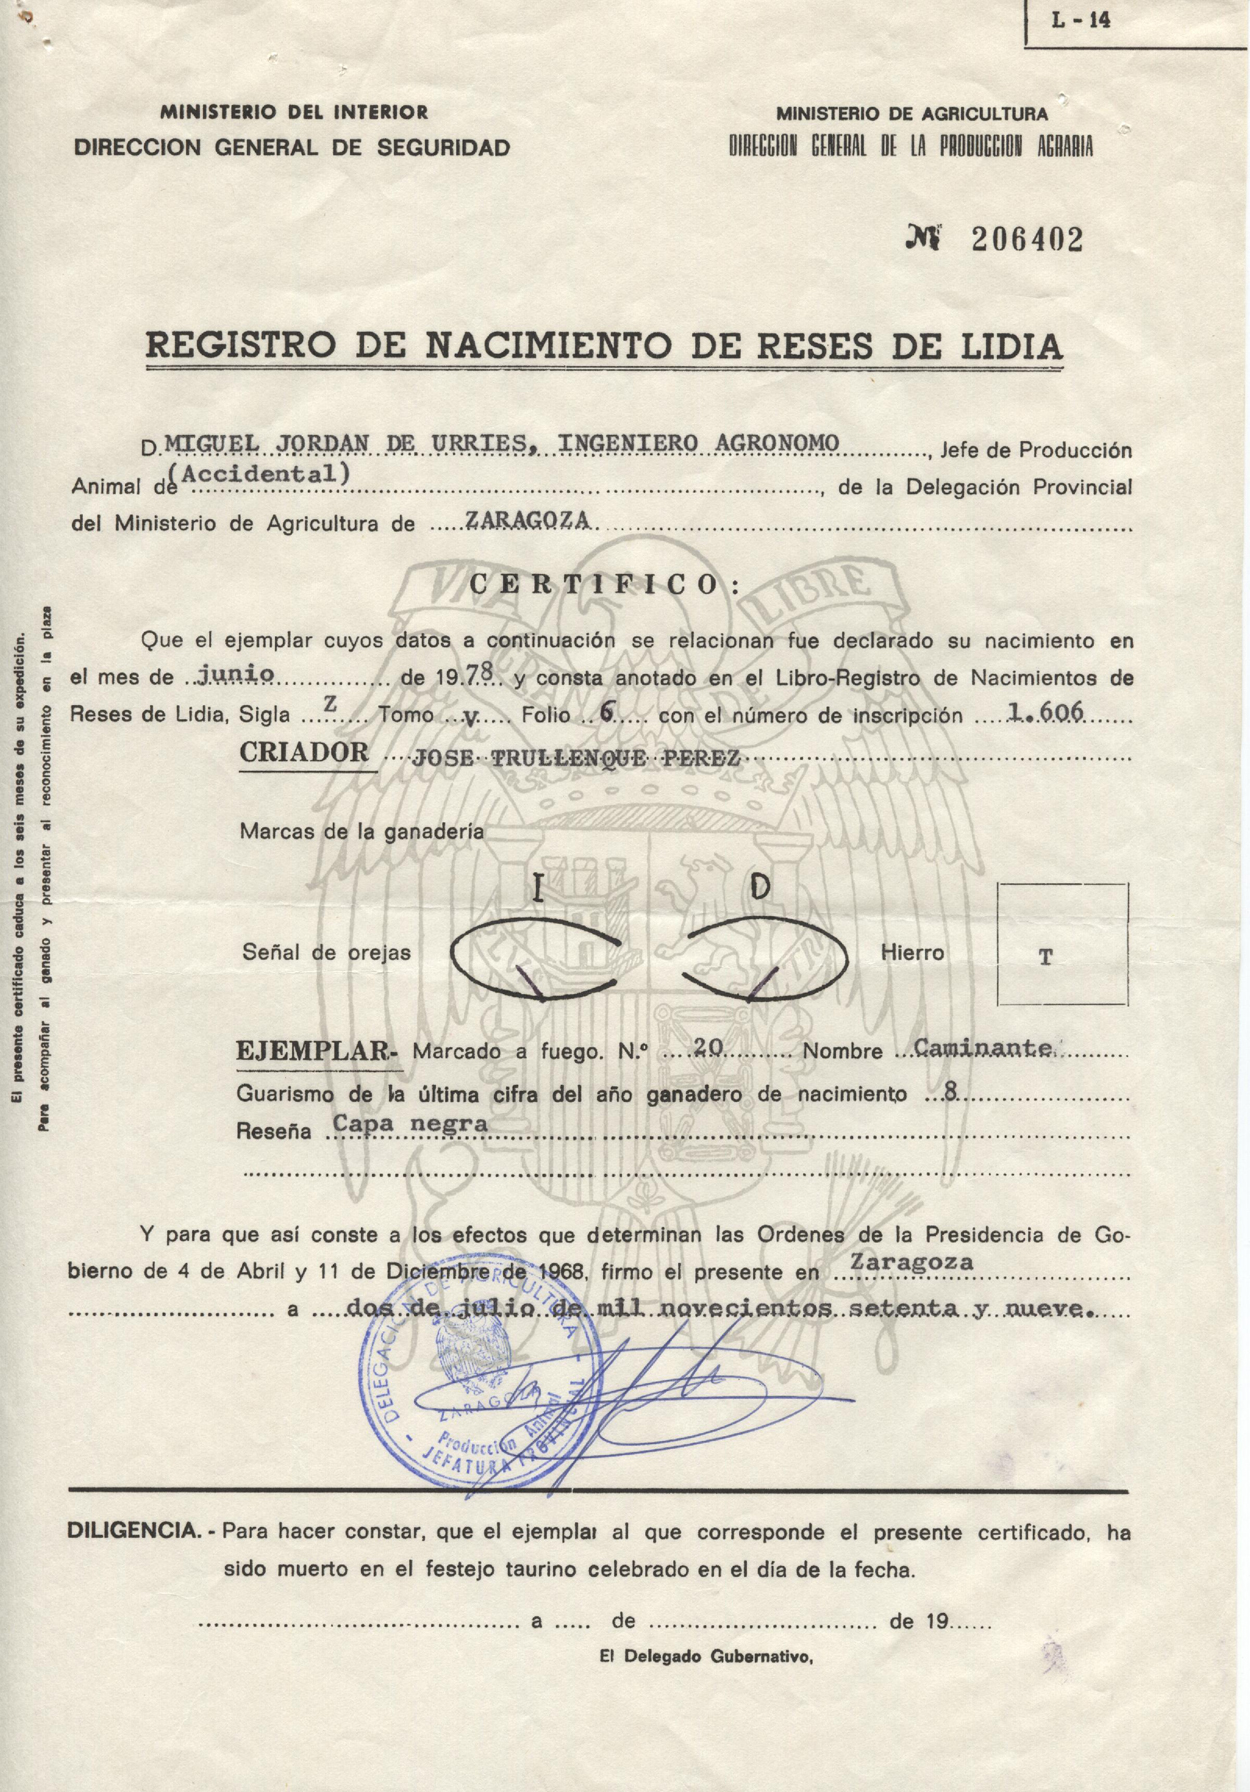 Registro de nacimiento del toro marcado a fuego nº 20  de nombre “Caminante”.